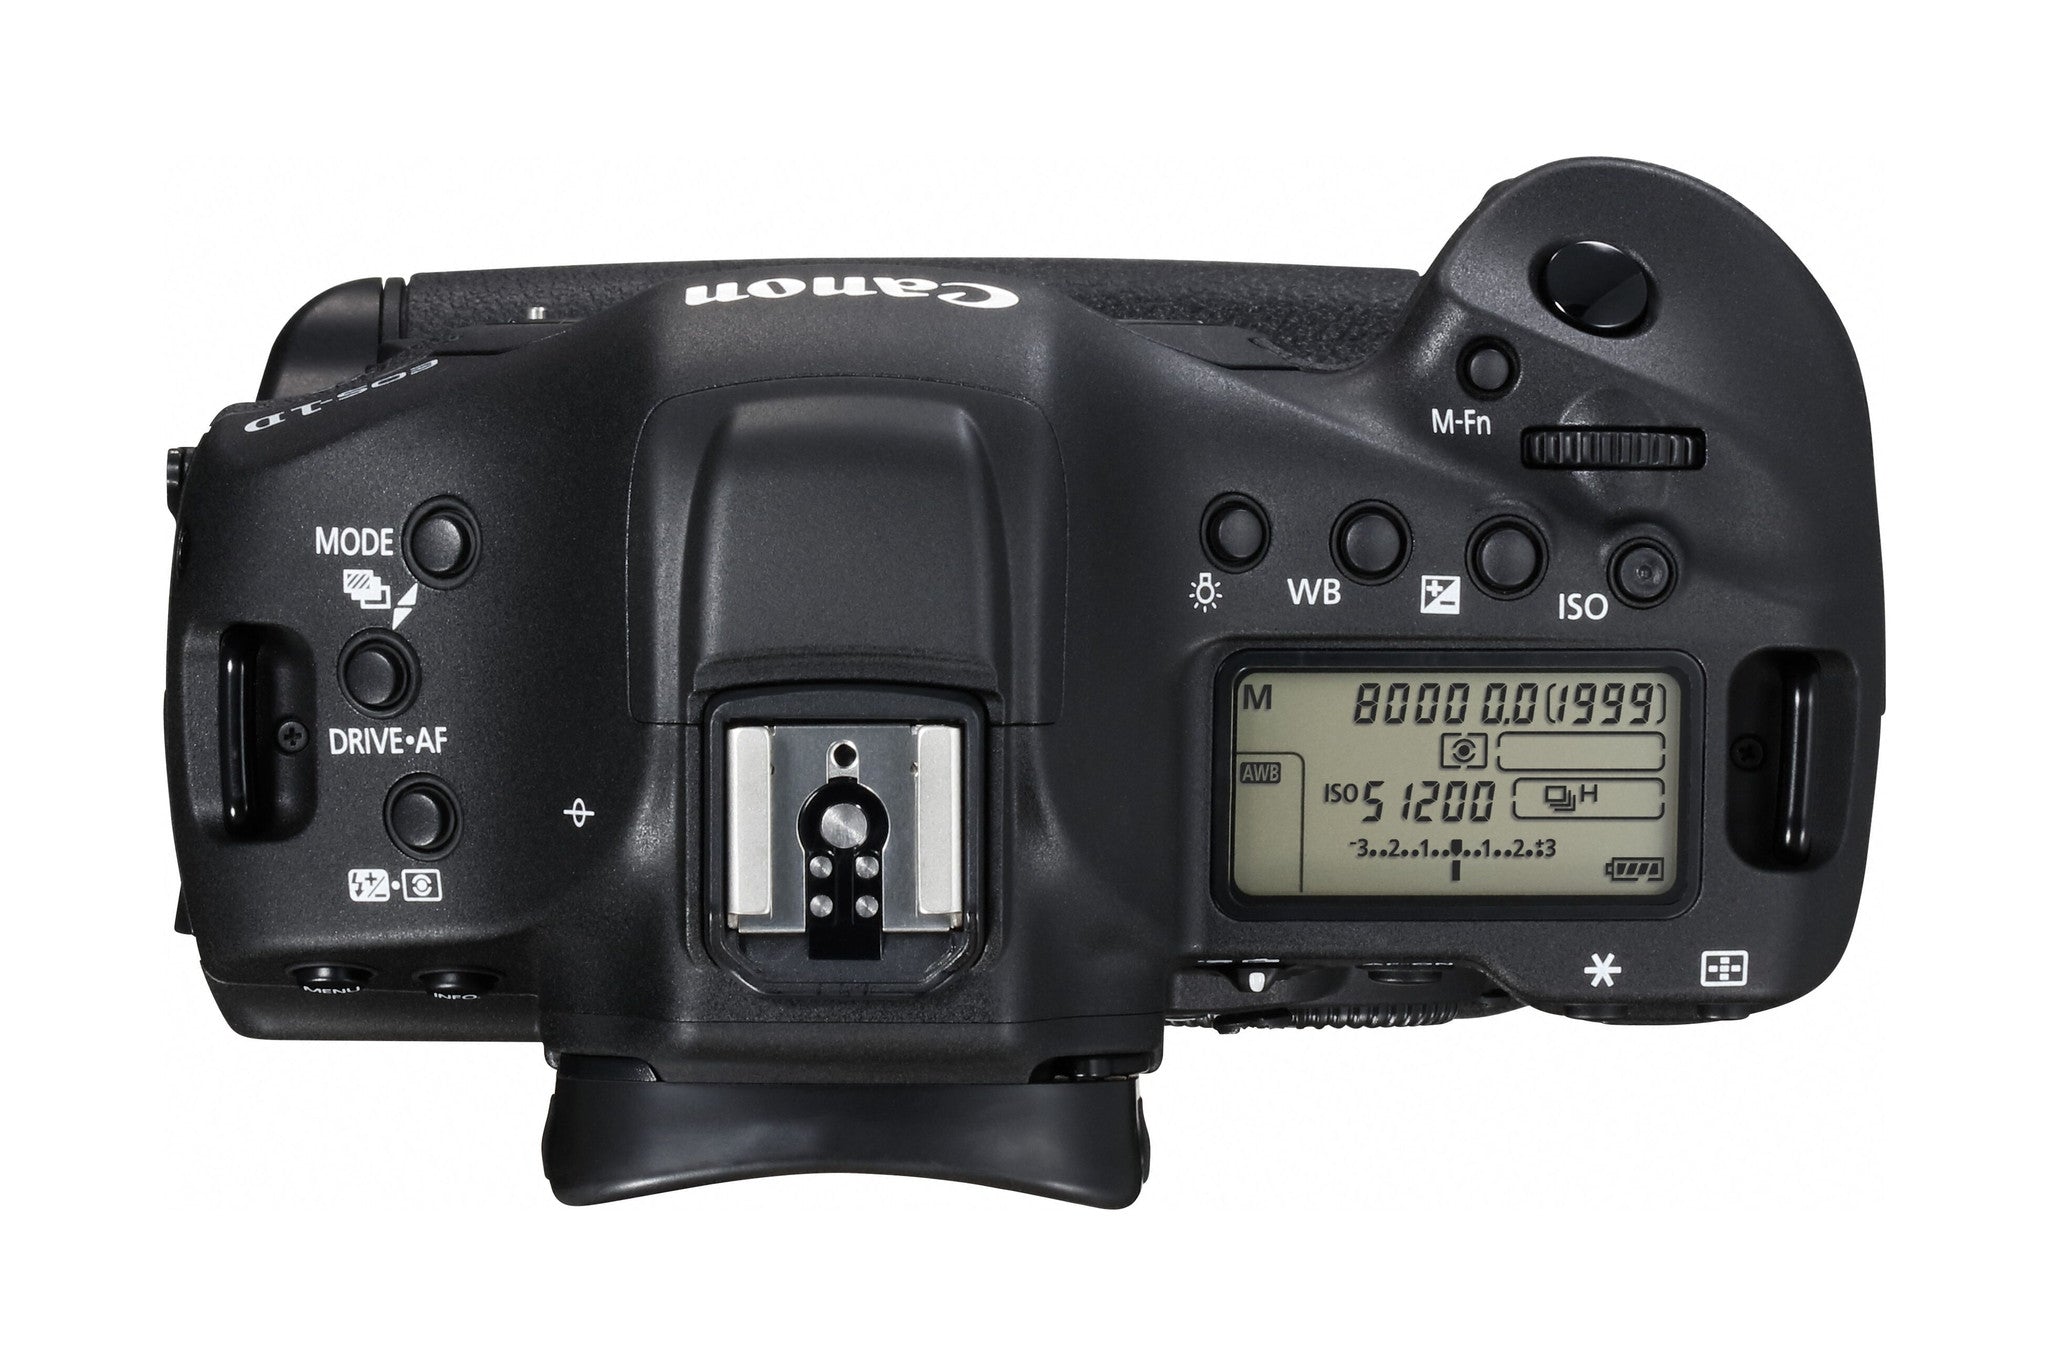 Canon EOS 1D X Mark II Digital Camera Body, camera dslr cameras, Canon - Pictureline  - 3